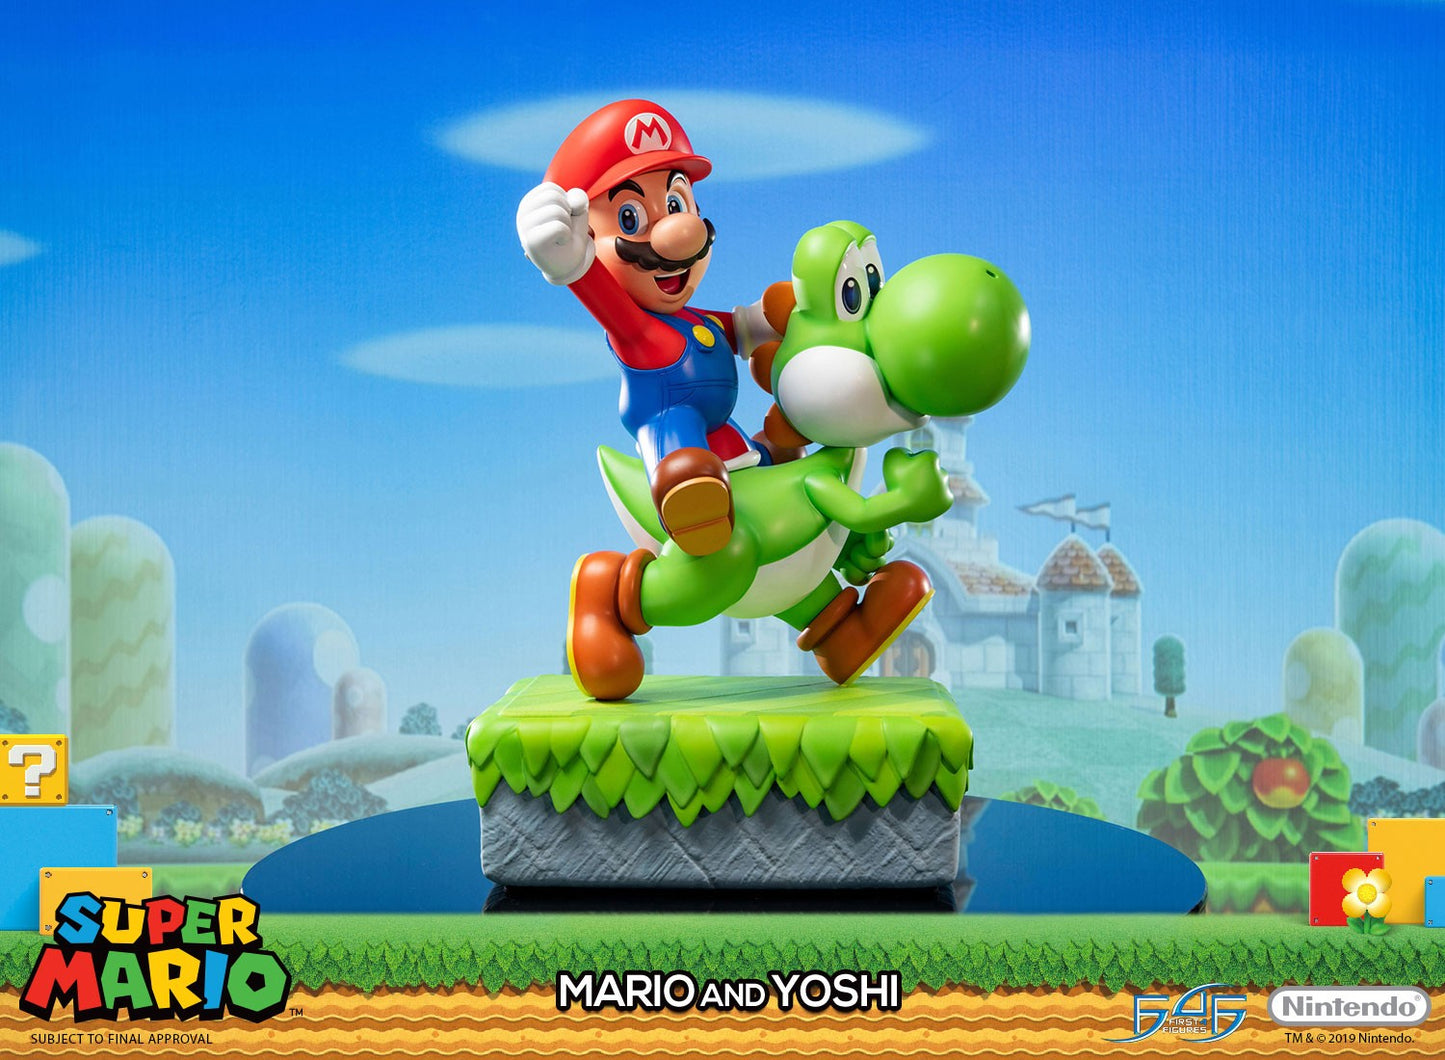 Mario & Yoshi - Super Mario Bros.